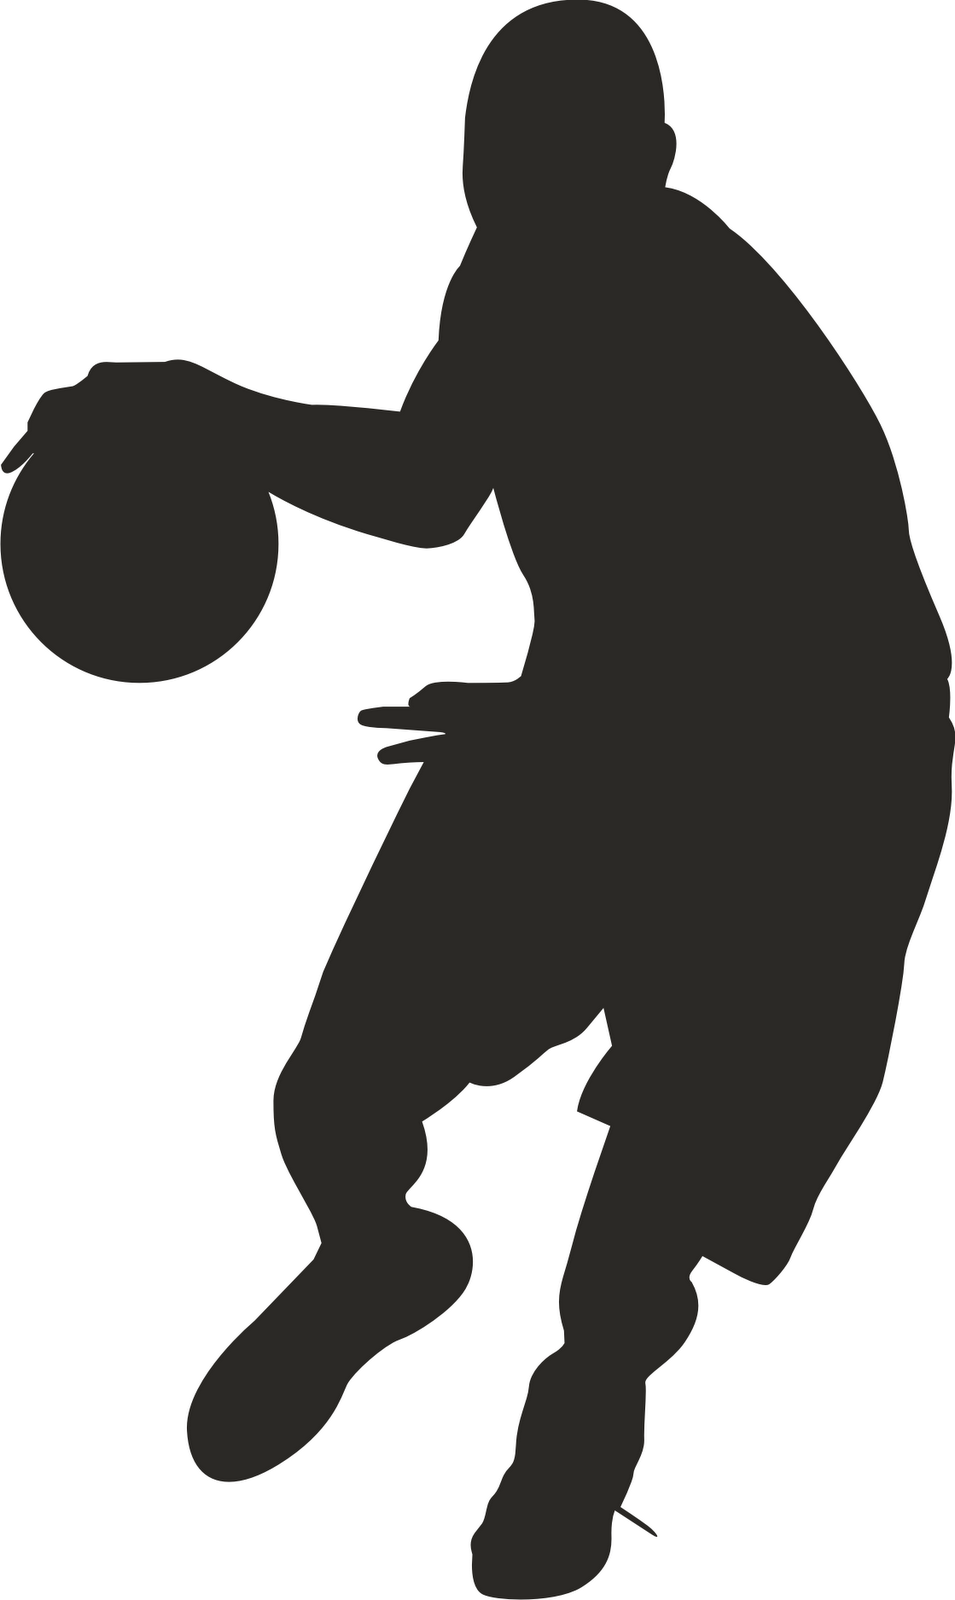 Clip Art Basketball Player - ClipArt Best - ClipArt Best